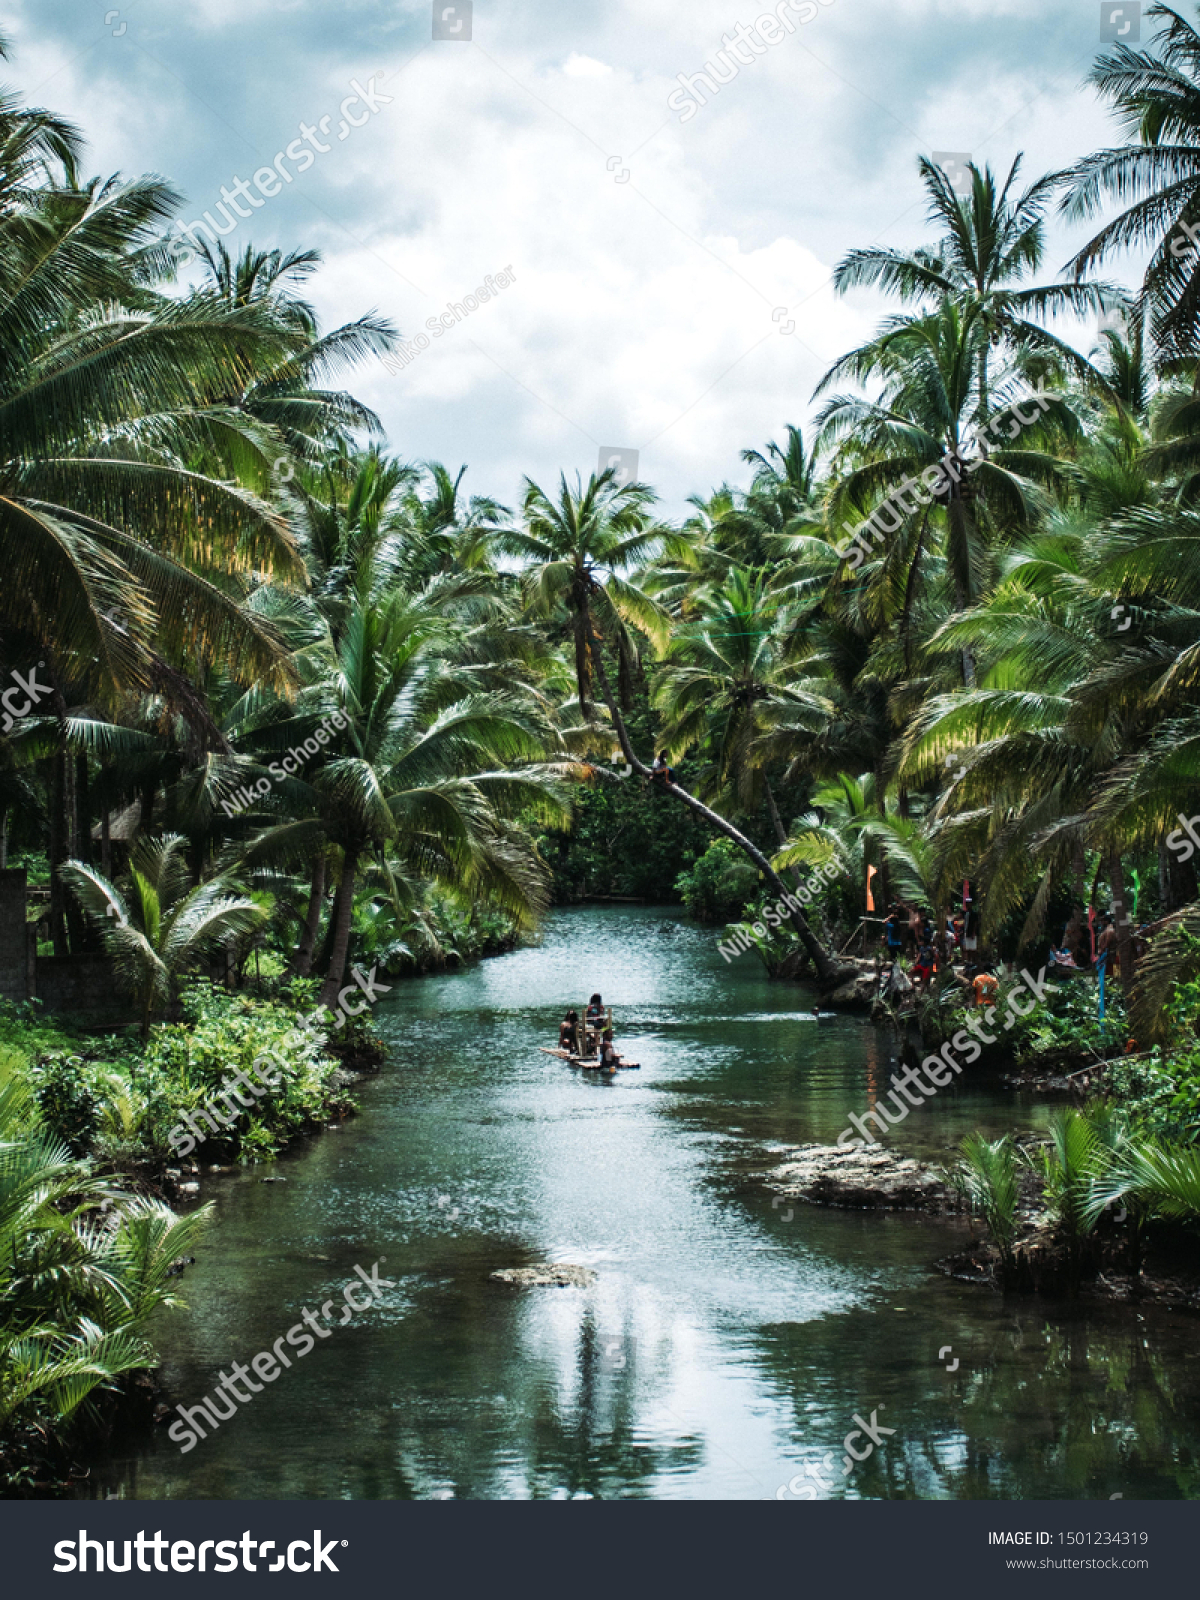 フィリピンのシャルガオで その隣に筏と人 泳ぎ手を持つヤシの木のジャングルを流れる川 の写真素材 今すぐ編集